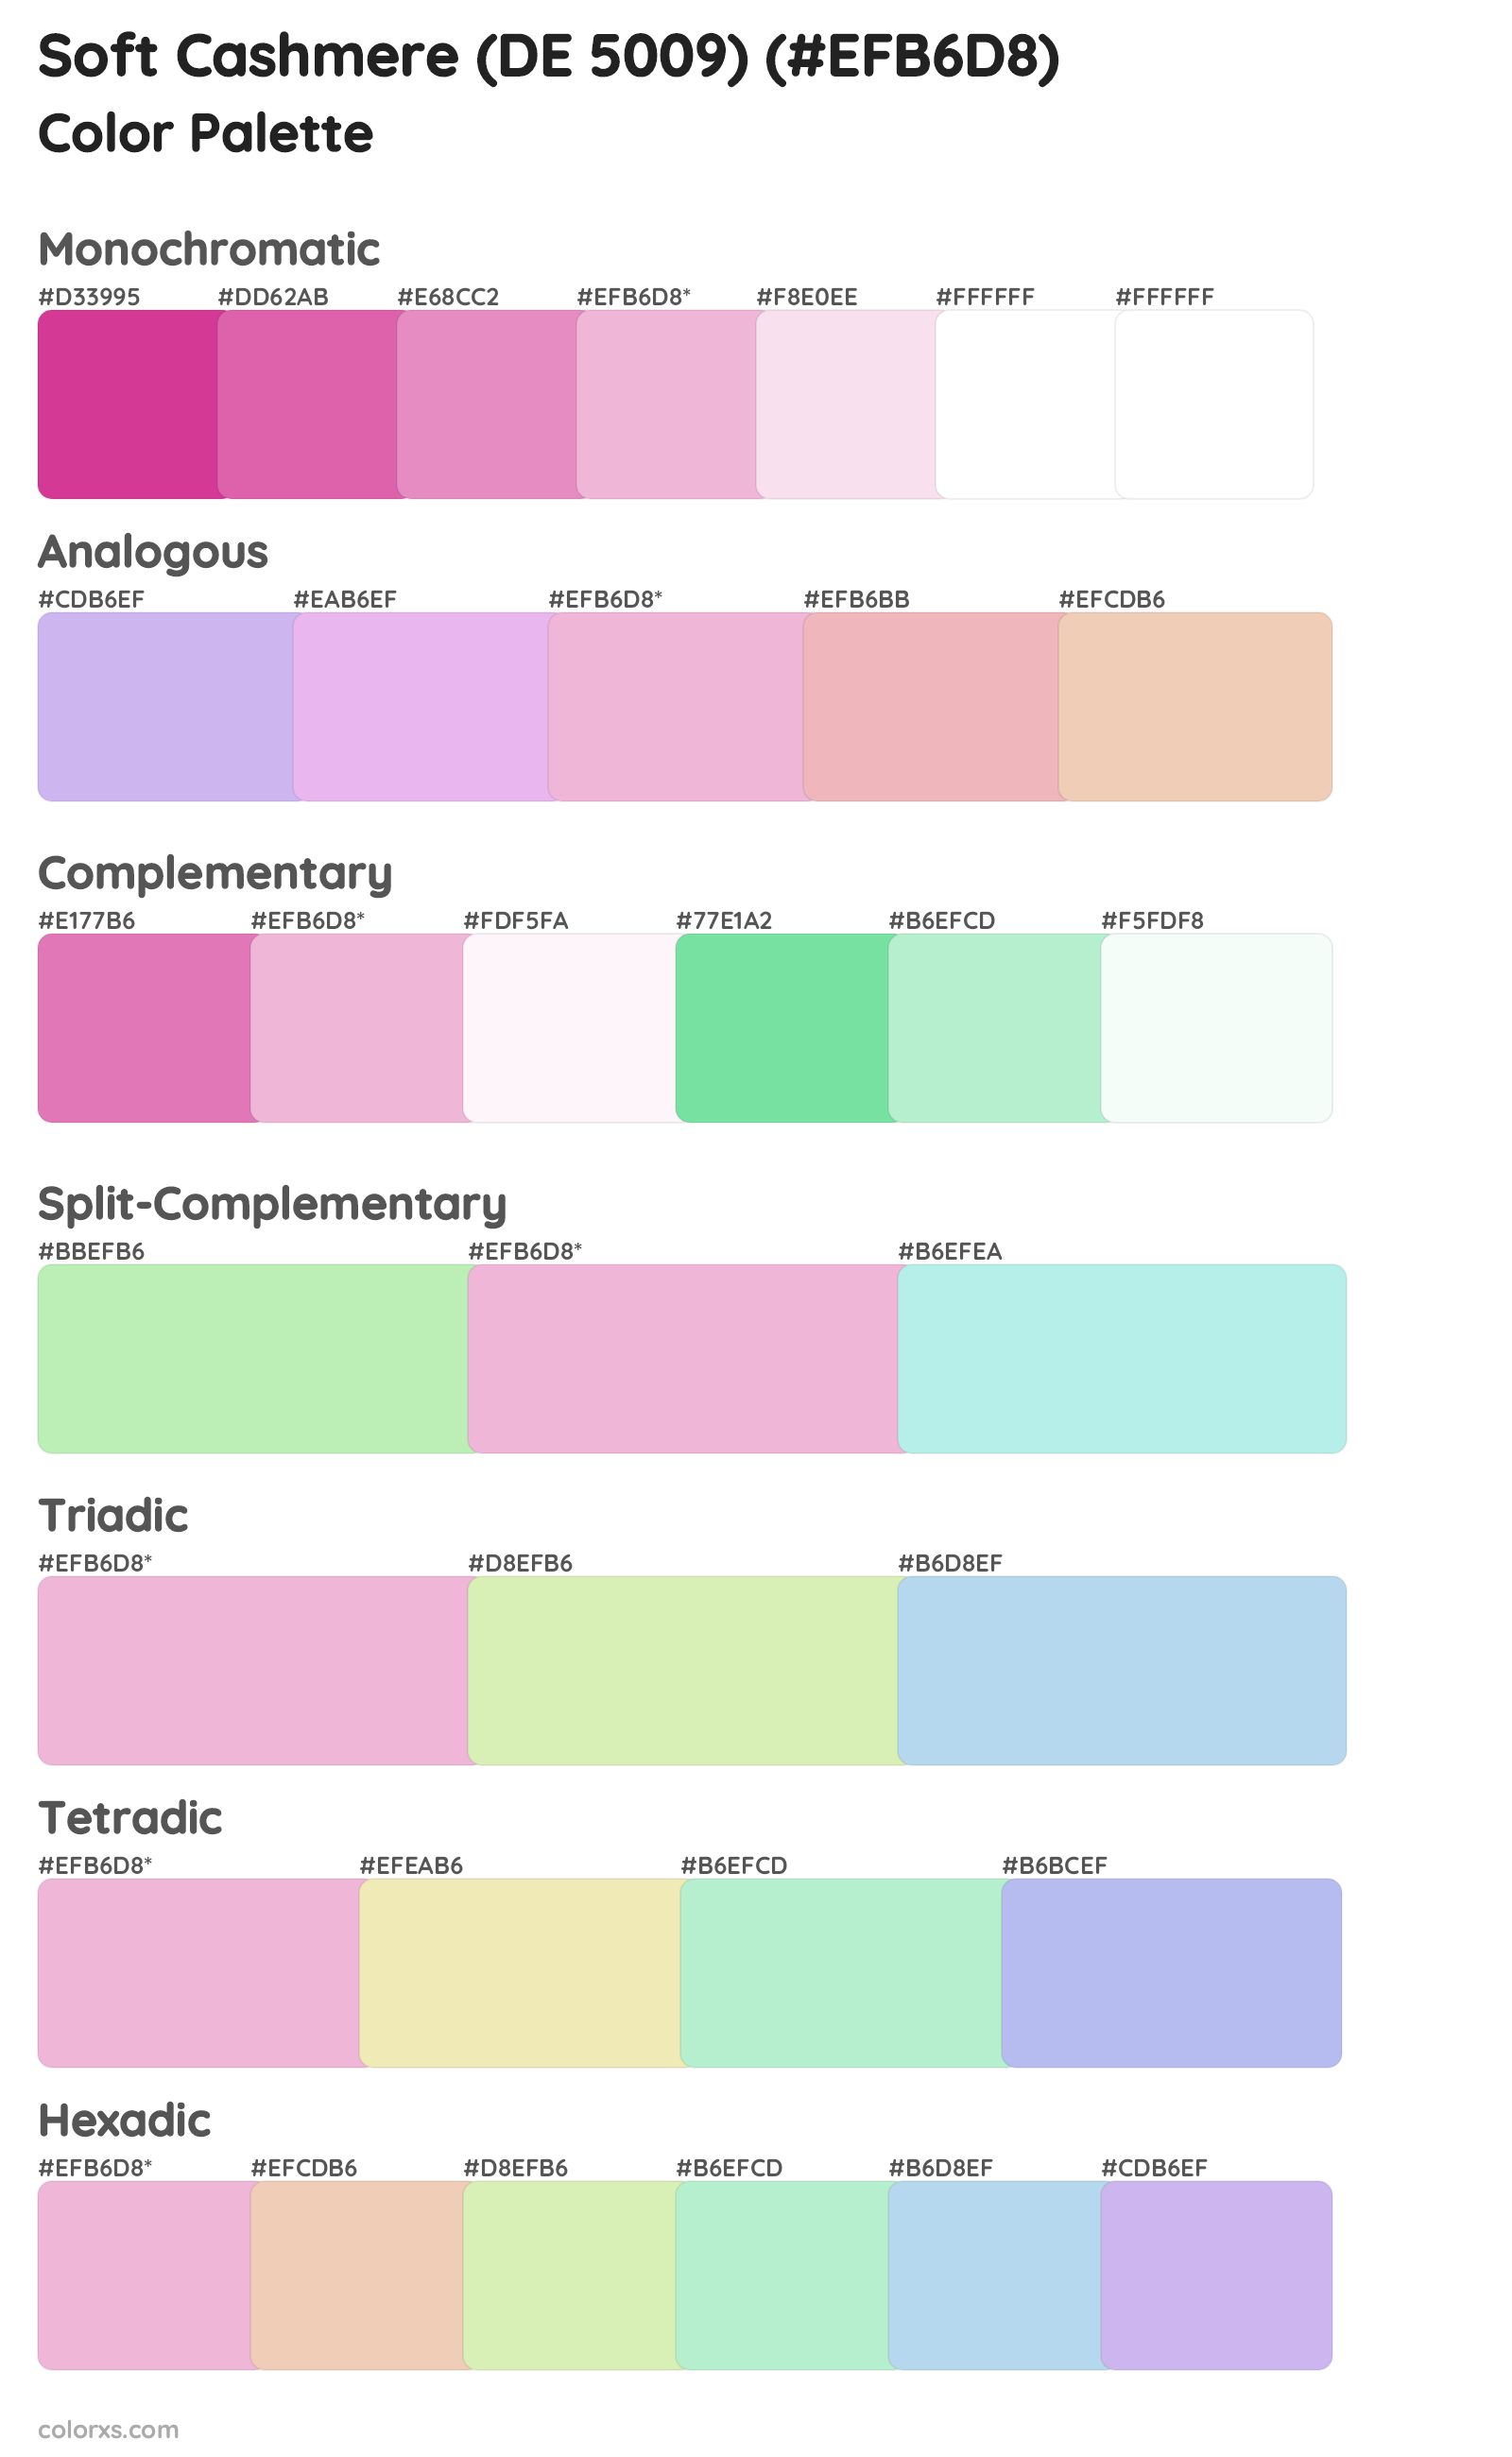 Soft Cashmere (DE 5009) Color Scheme Palettes